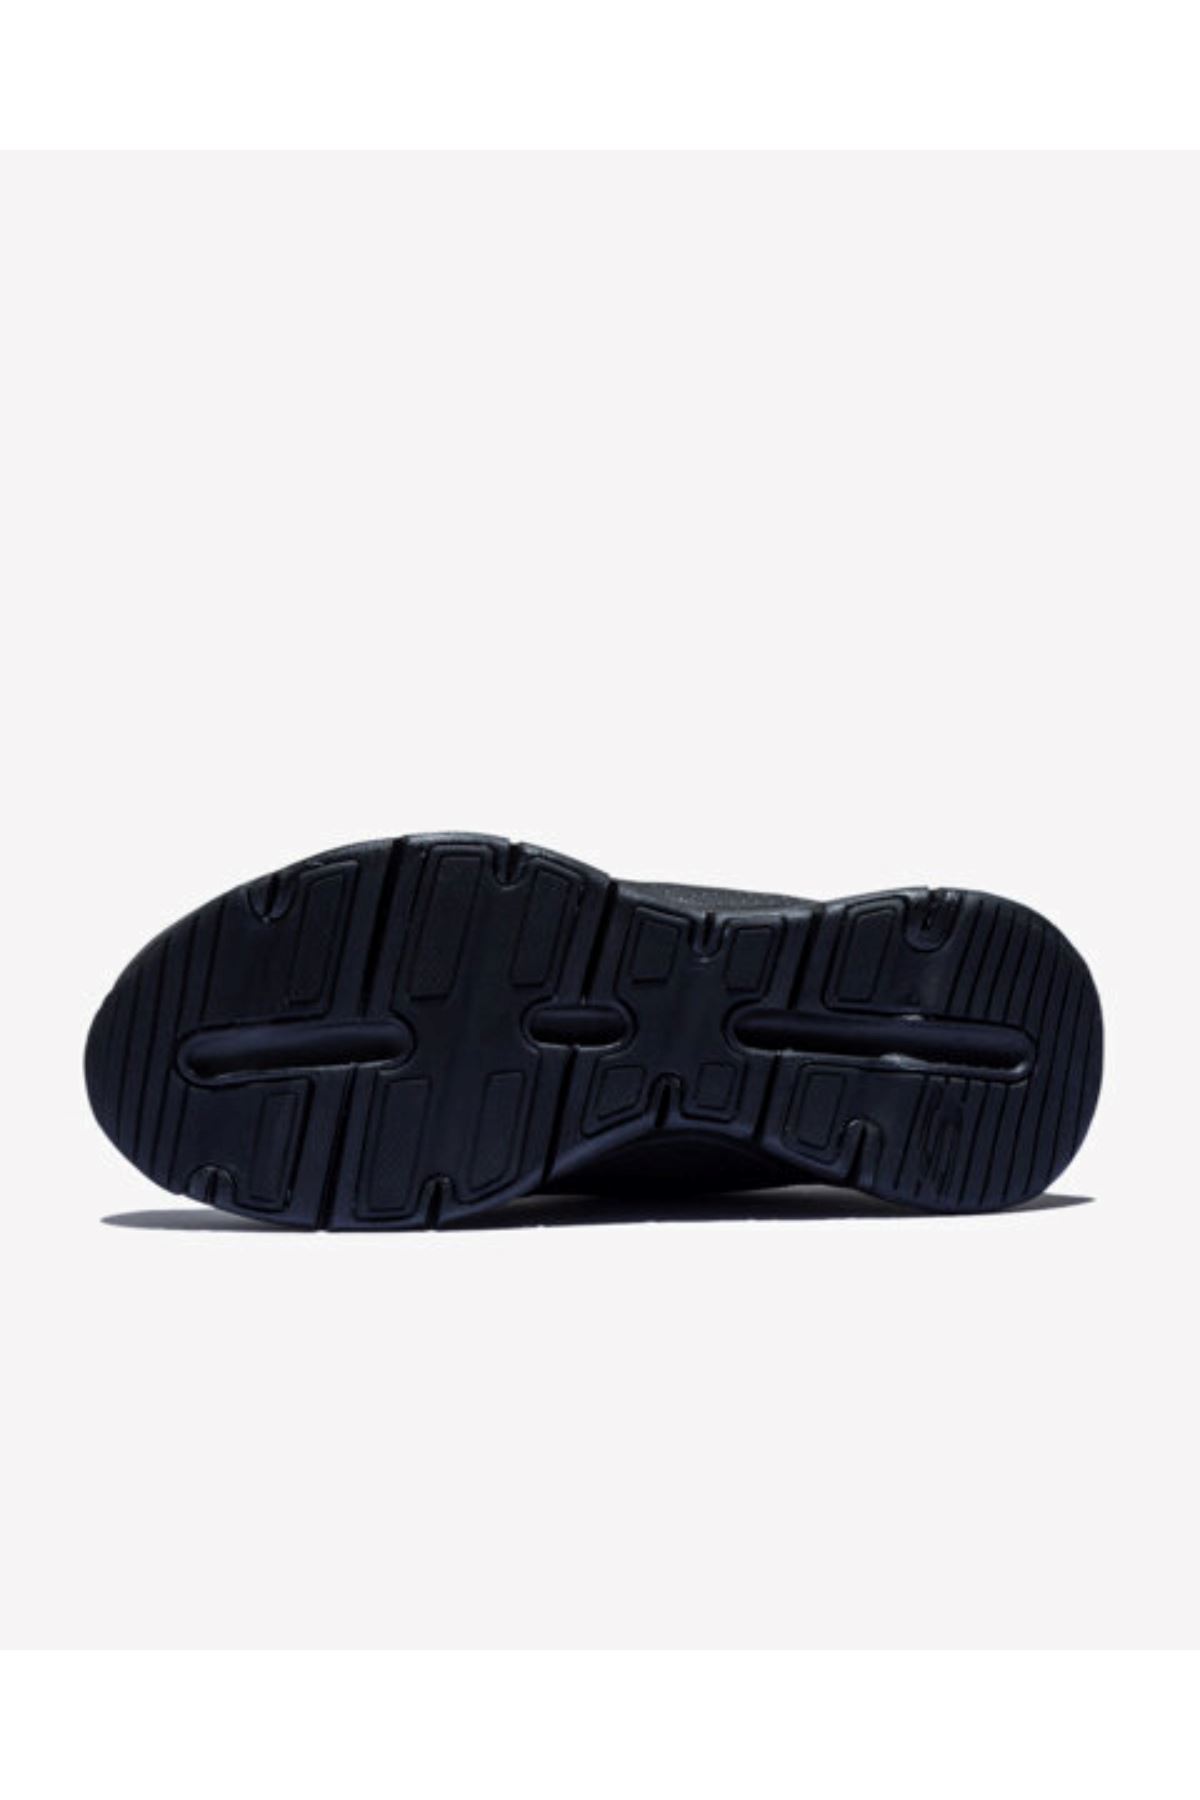 BBK Skechers Arch Fıt - Cıtı Drıve Kadın Siyah Spor Ayakkabı - 149146TK